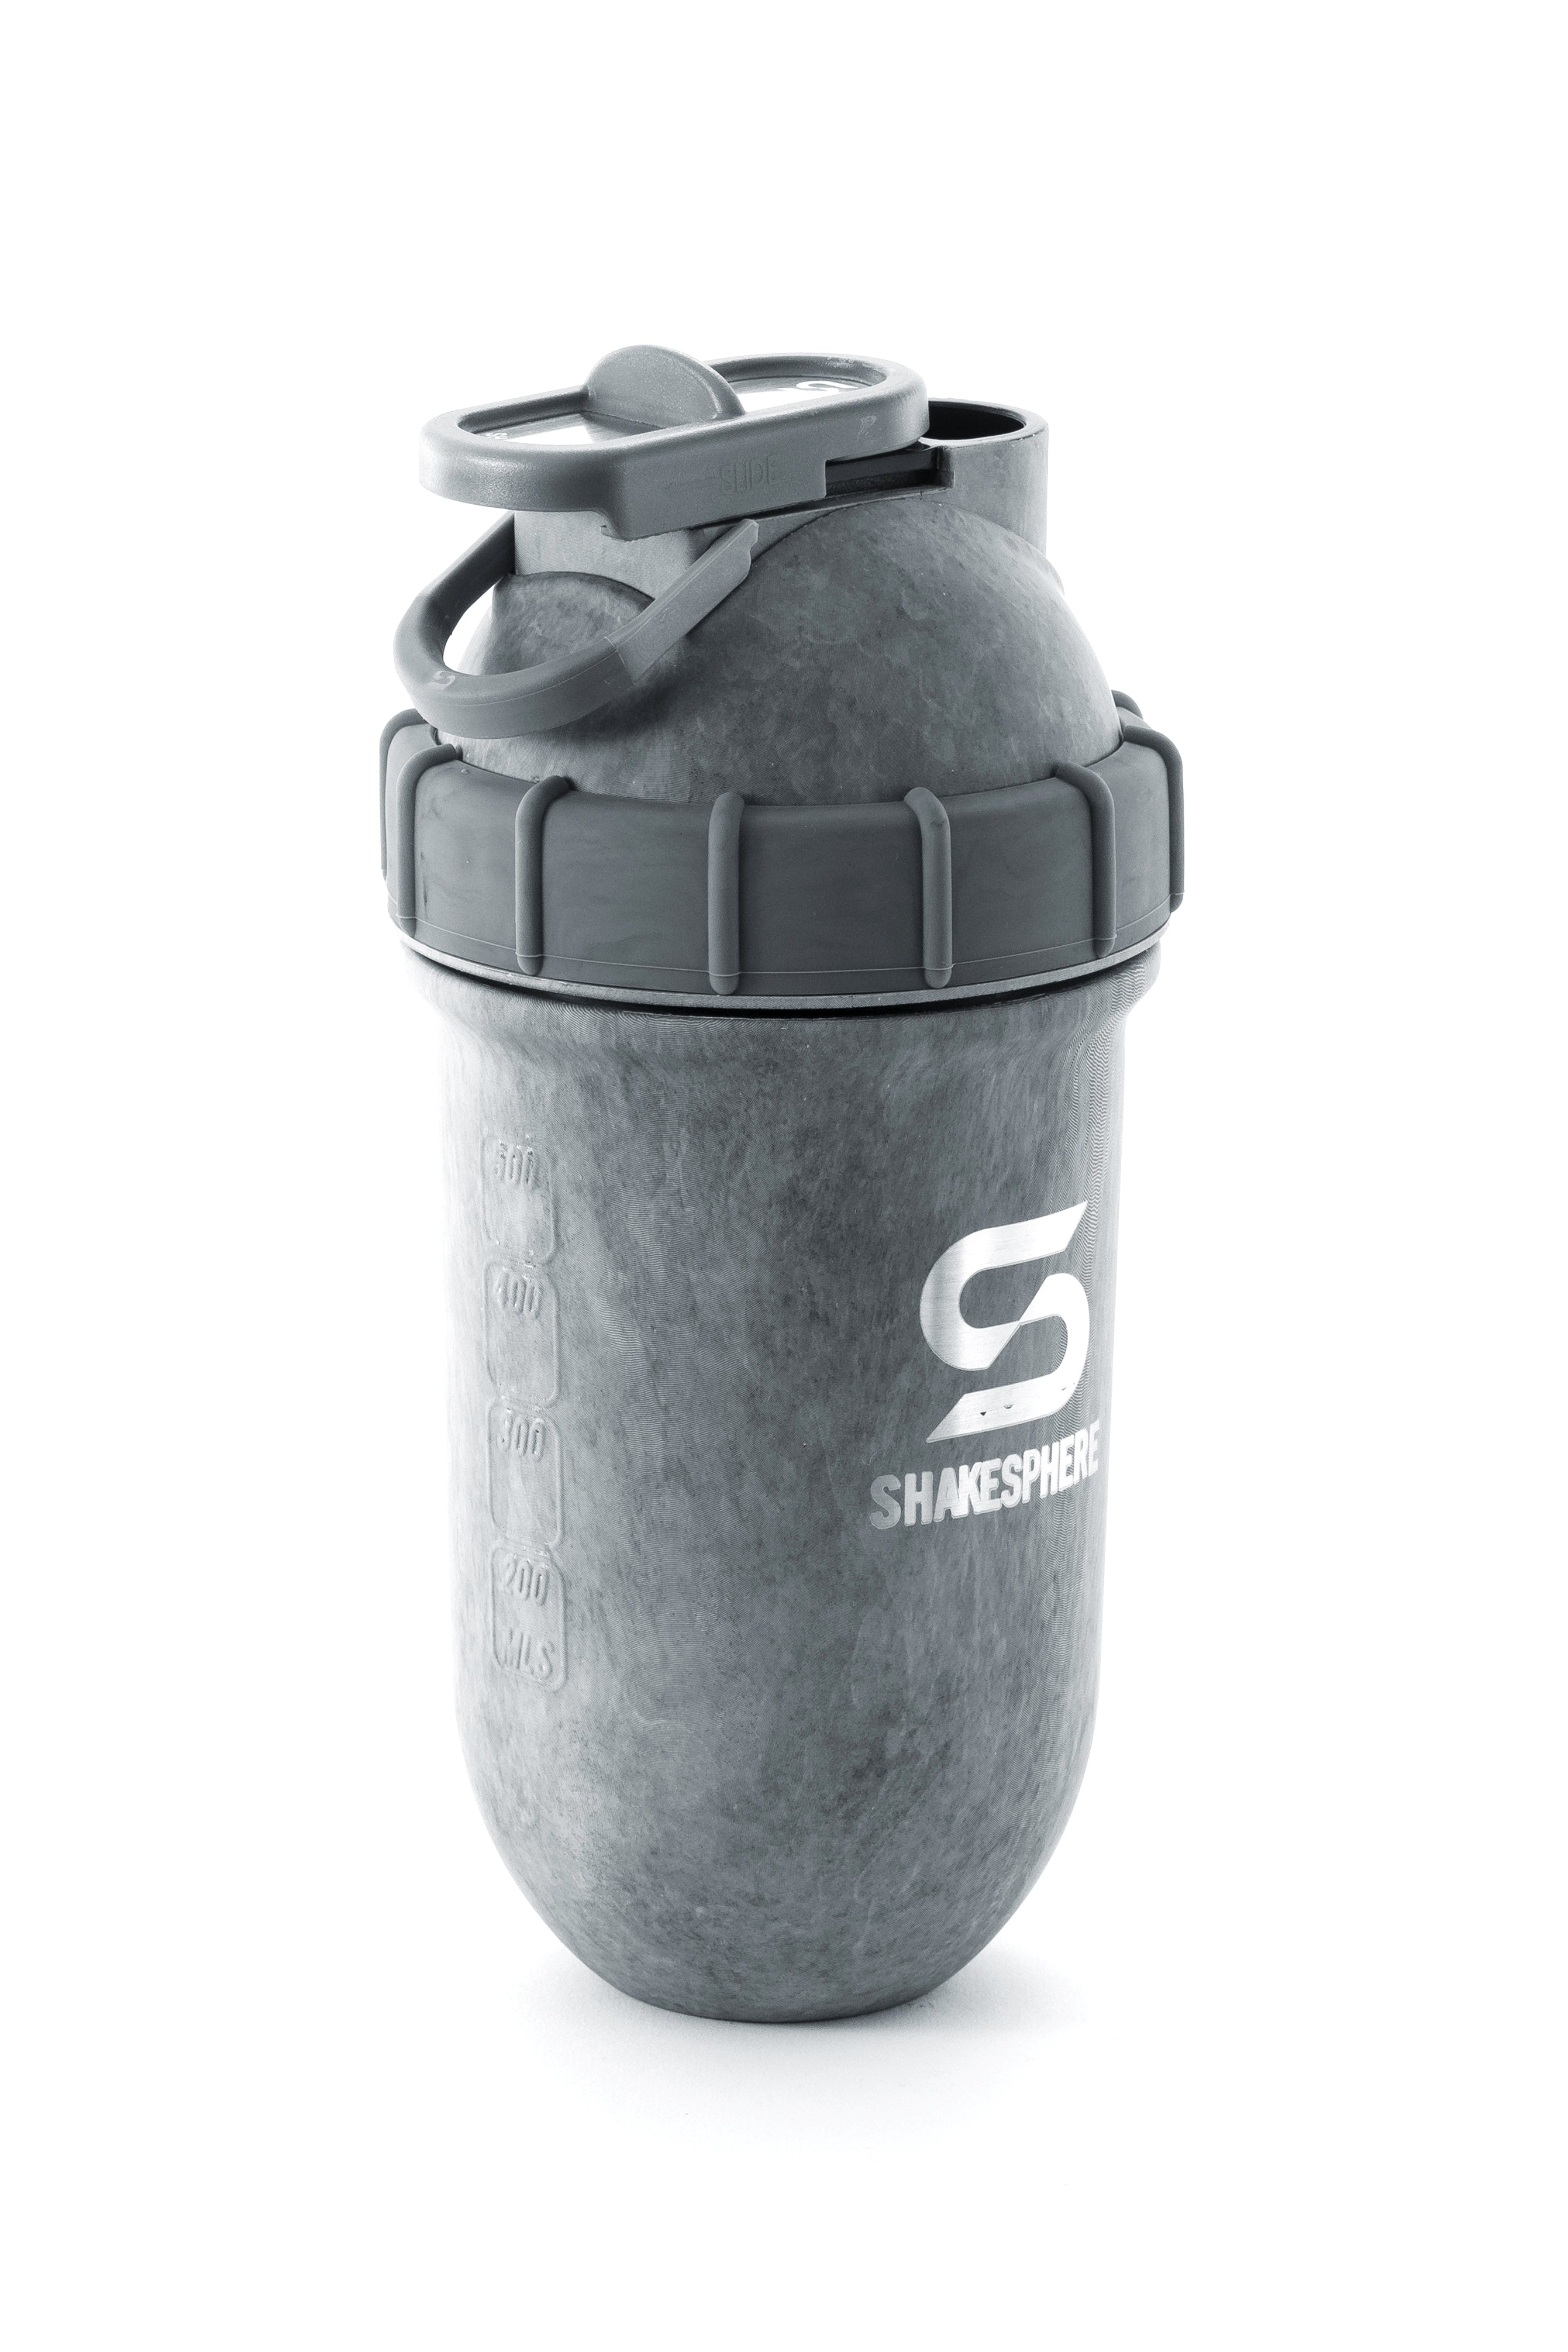 Stainless steel protein shaker bottles – ShakeSphere US